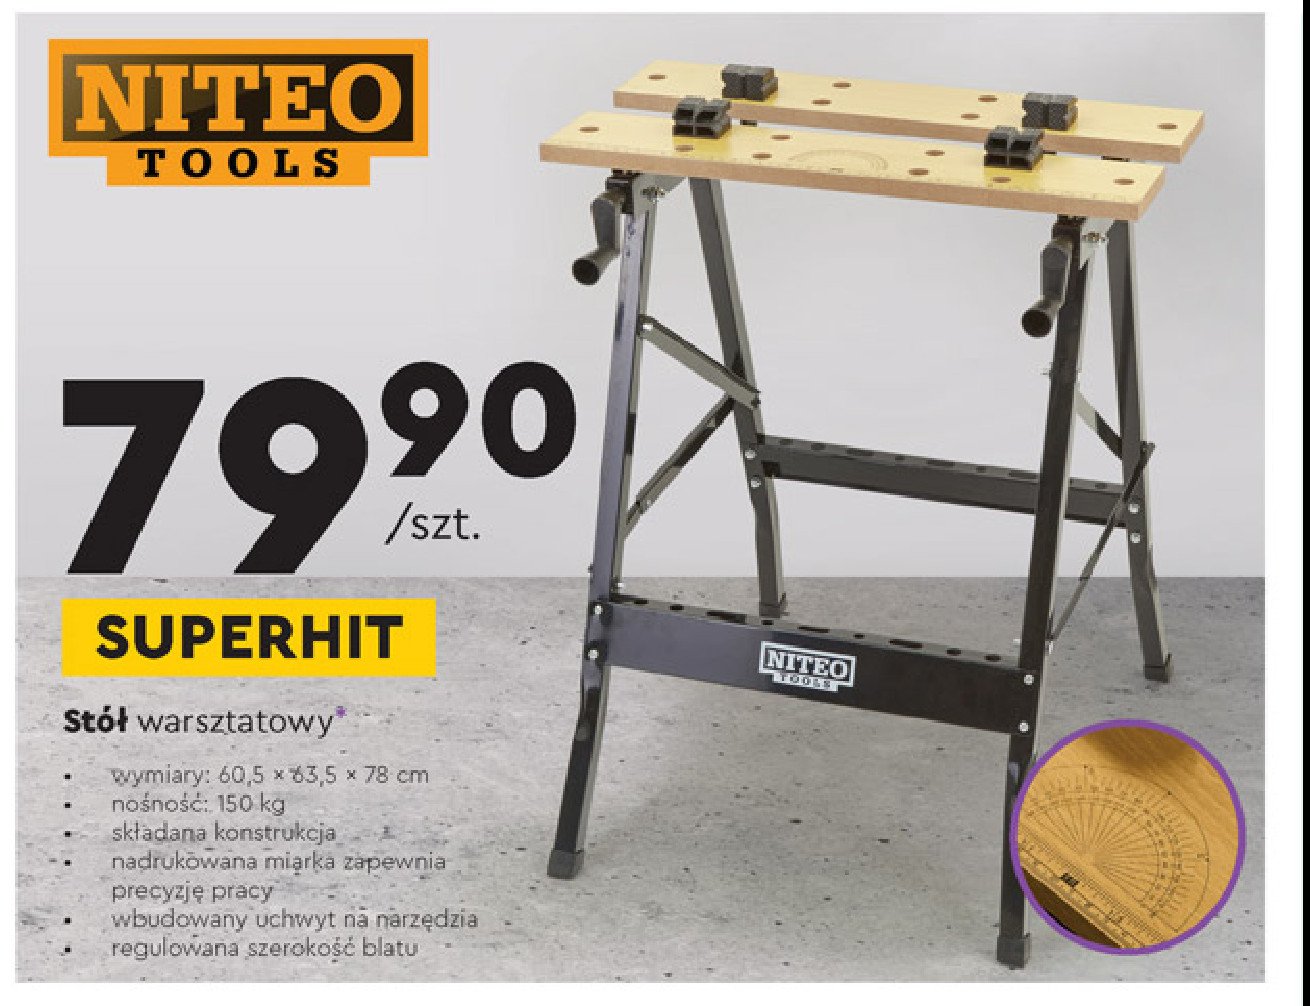 Stół warsztatowy 60.5 x 63.5 x 78 cm Niteo tools promocja